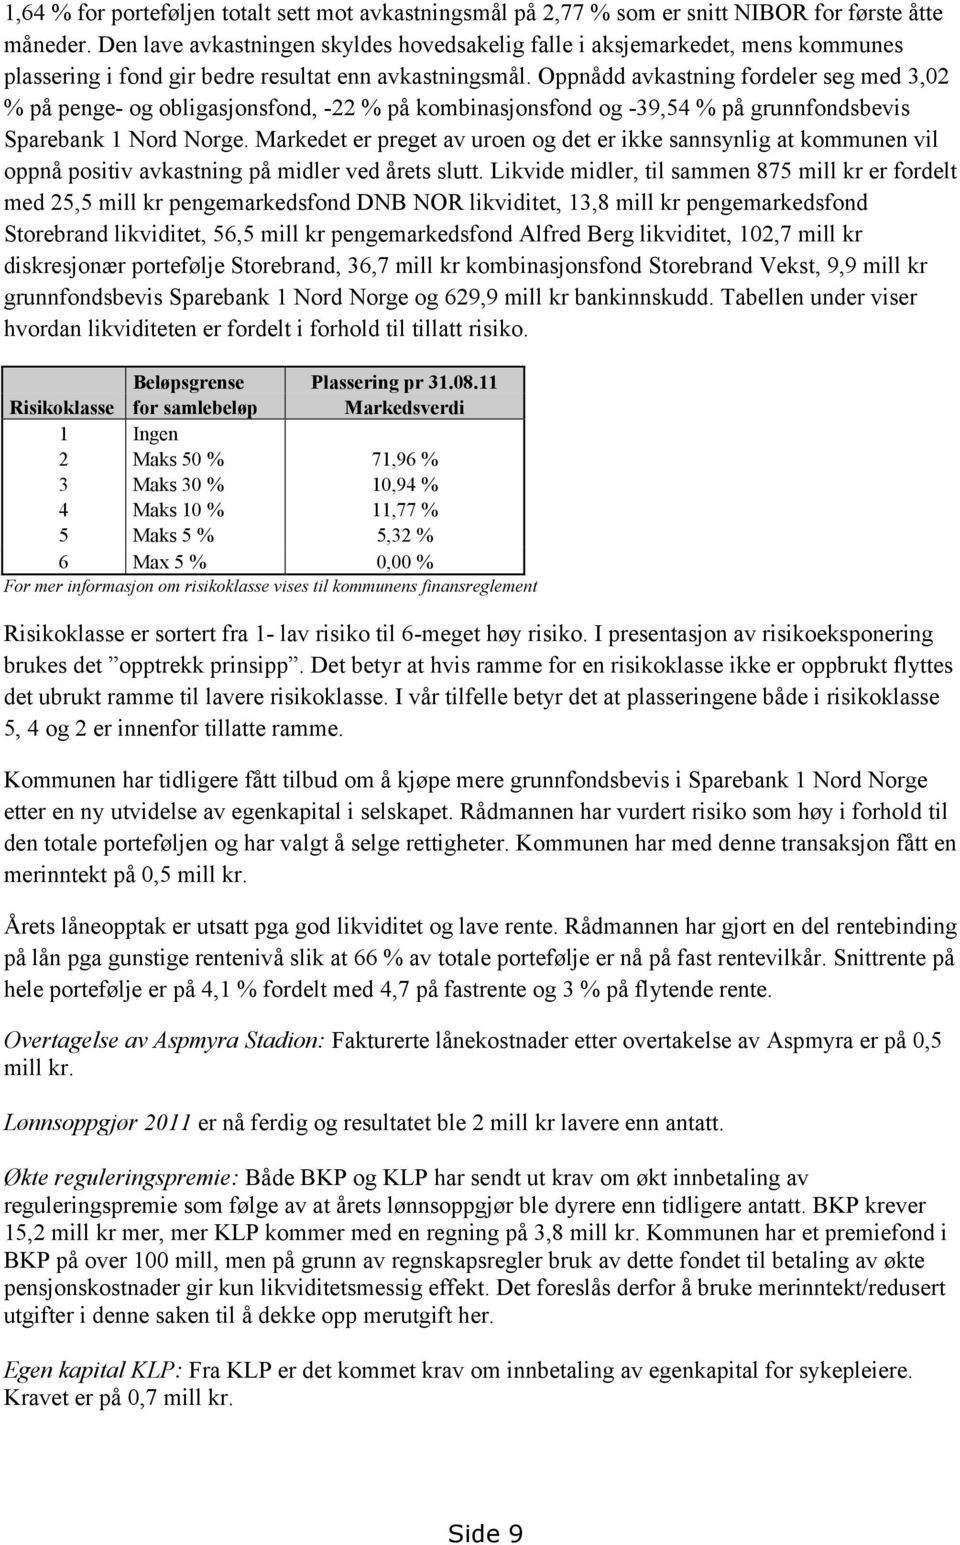 Oppnådd avkastning fordeler seg med 3,02 % på penge- og obligasjonsfond, -22 % på kombinasjonsfond og -39,54 % på grunnfondsbevis Sparebank 1 Nord Norge.